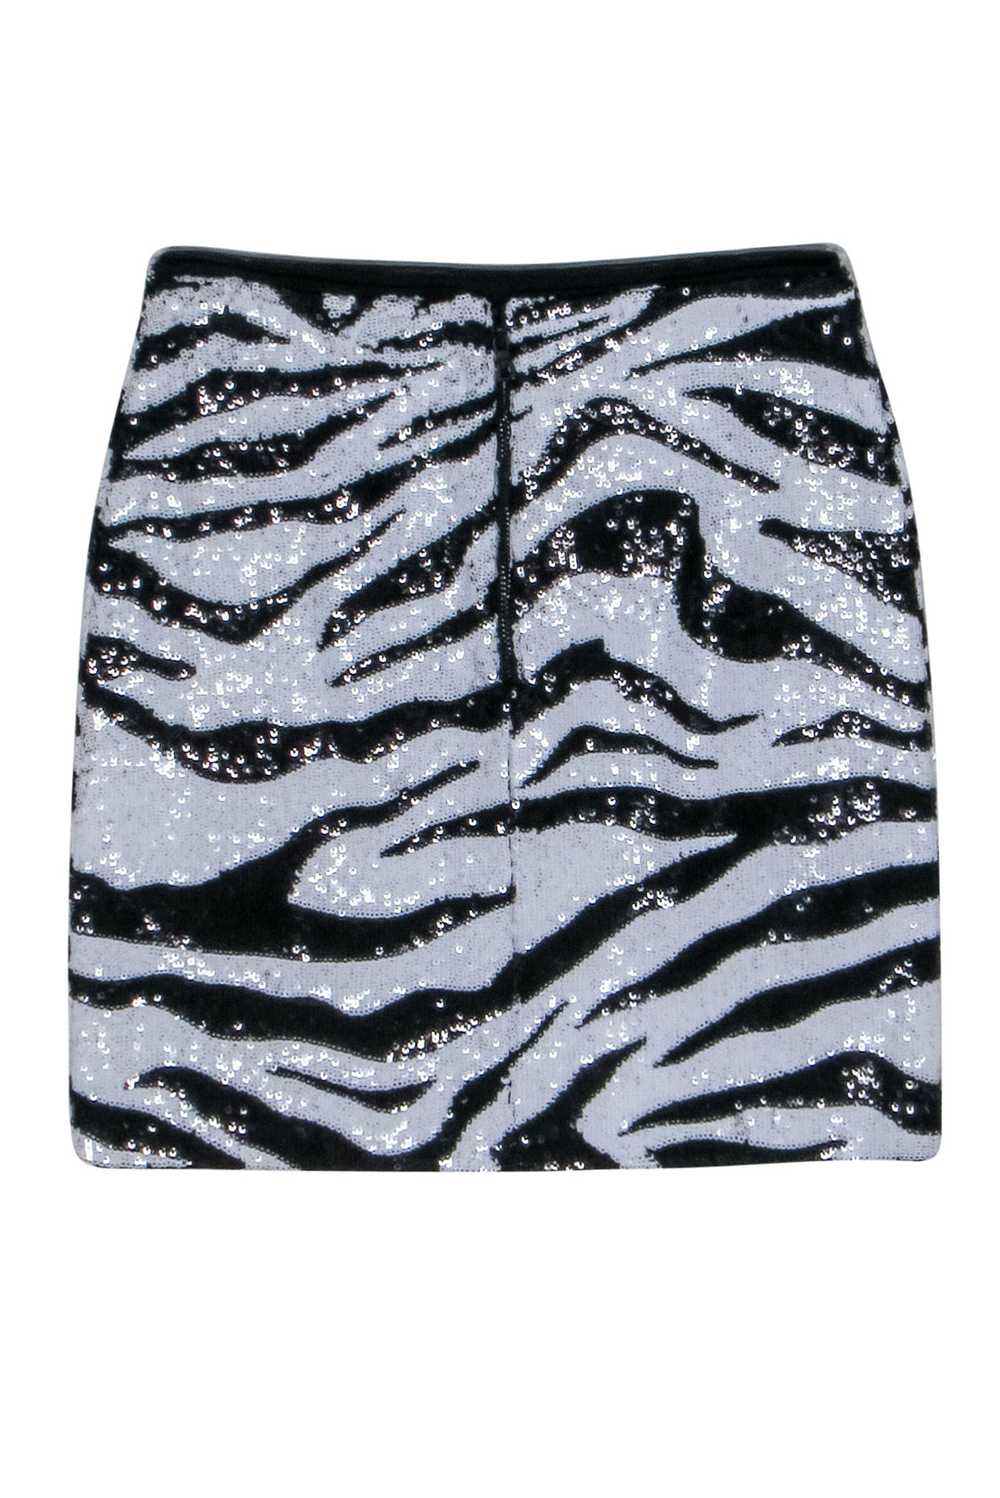 Alice & Olvia - Zebra Print Sequin Mini Skirt Sz 0 - image 2